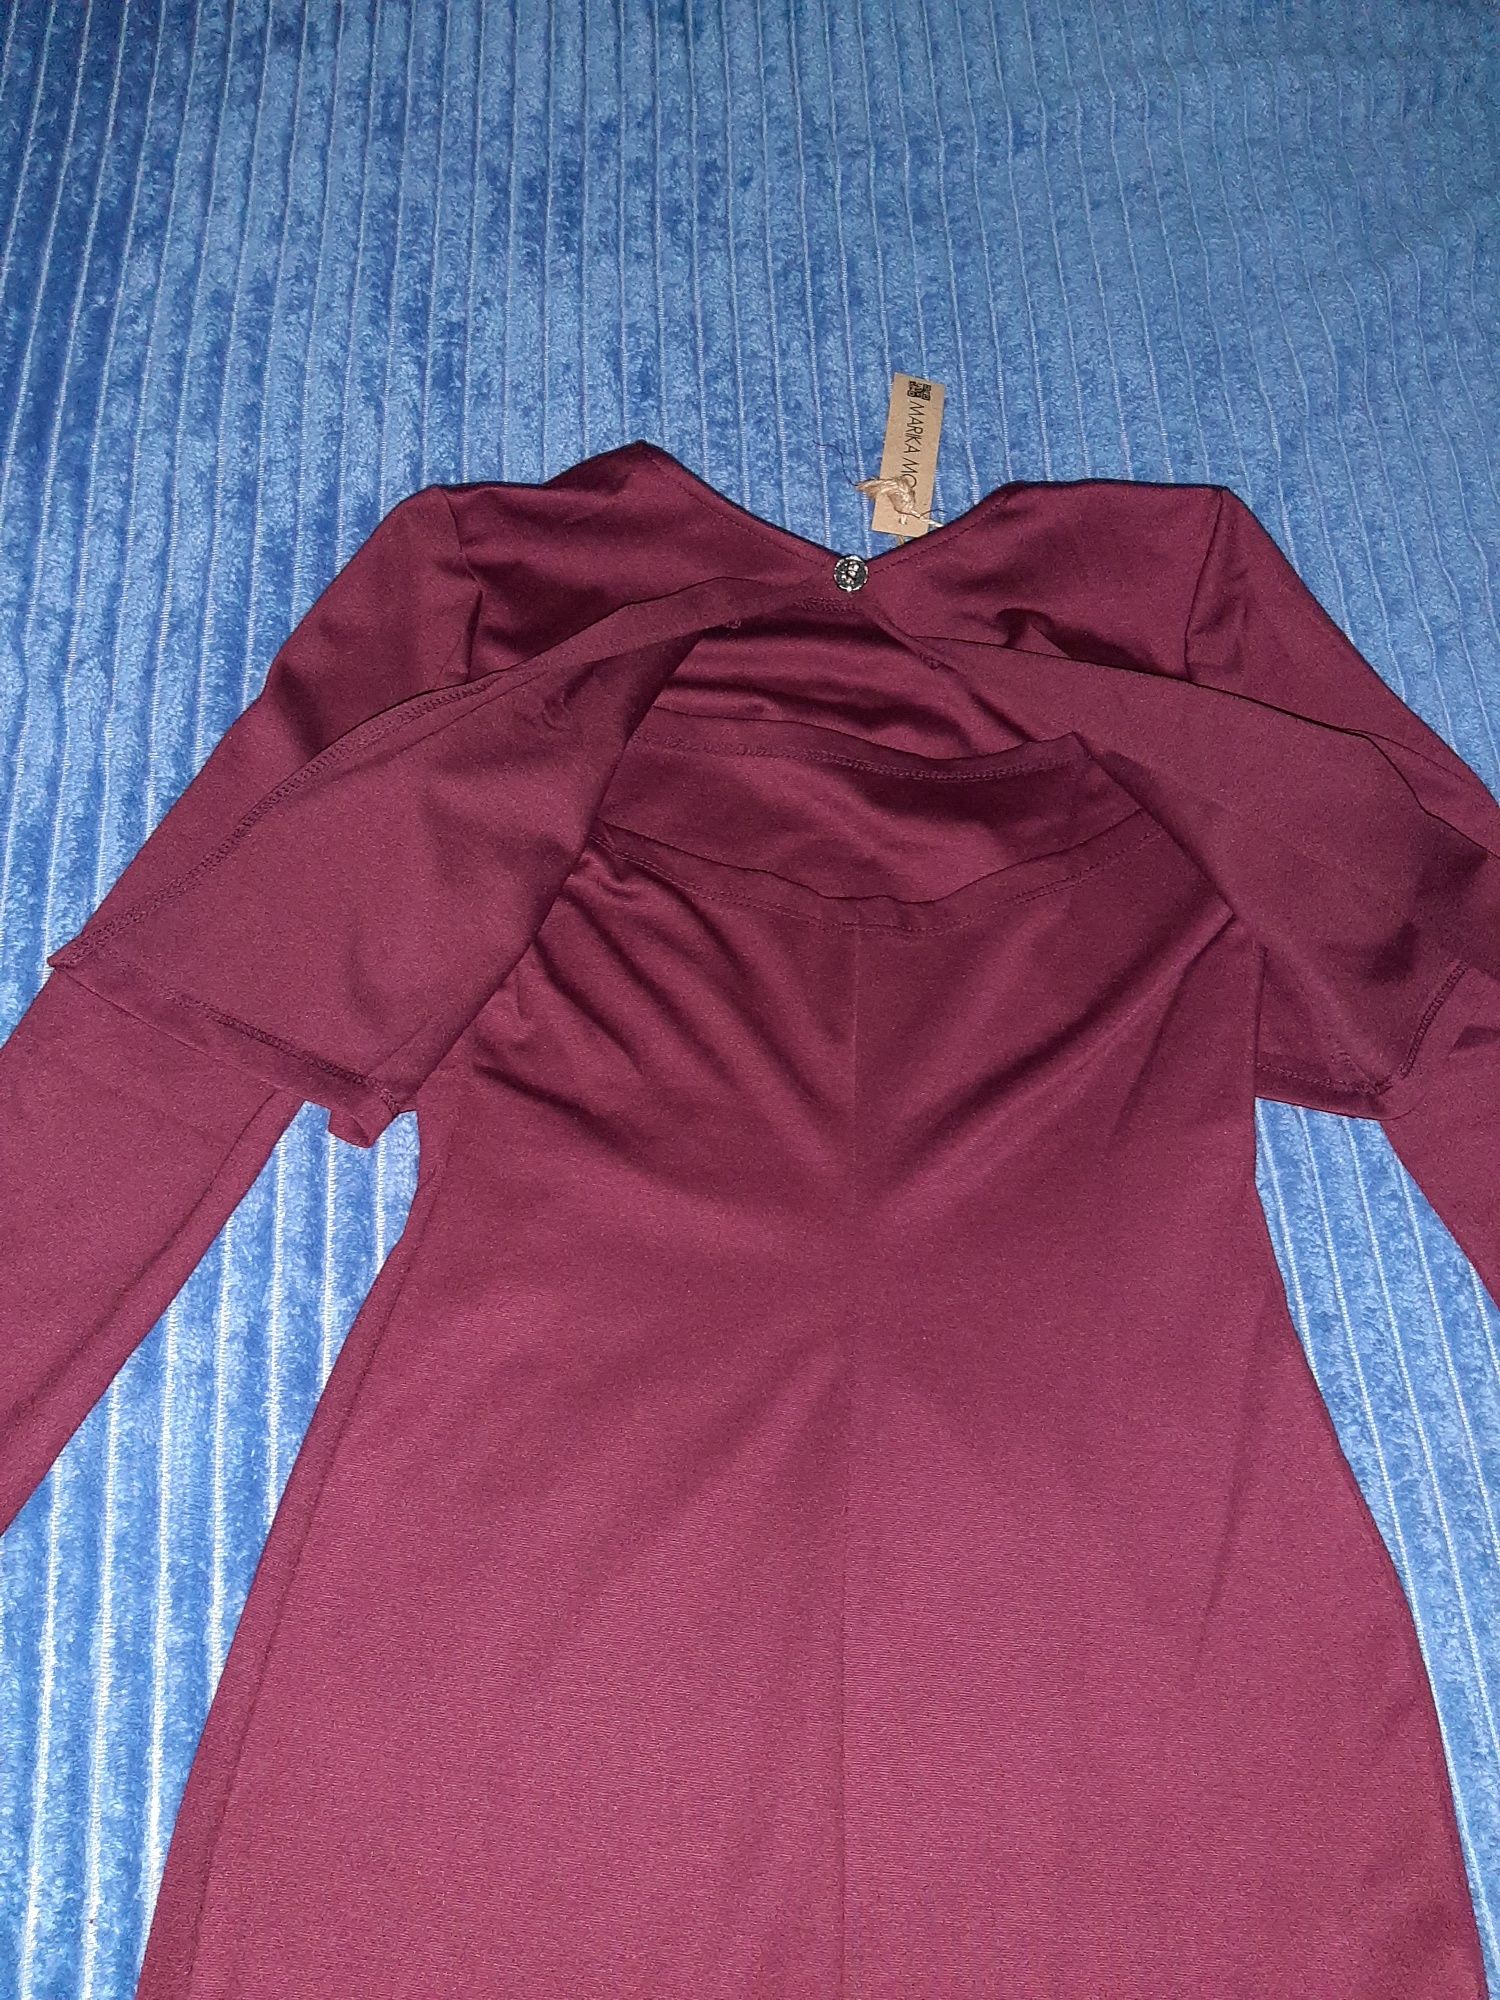 Стильное новое повседневное бордовое платье из трикотажа р S (42)